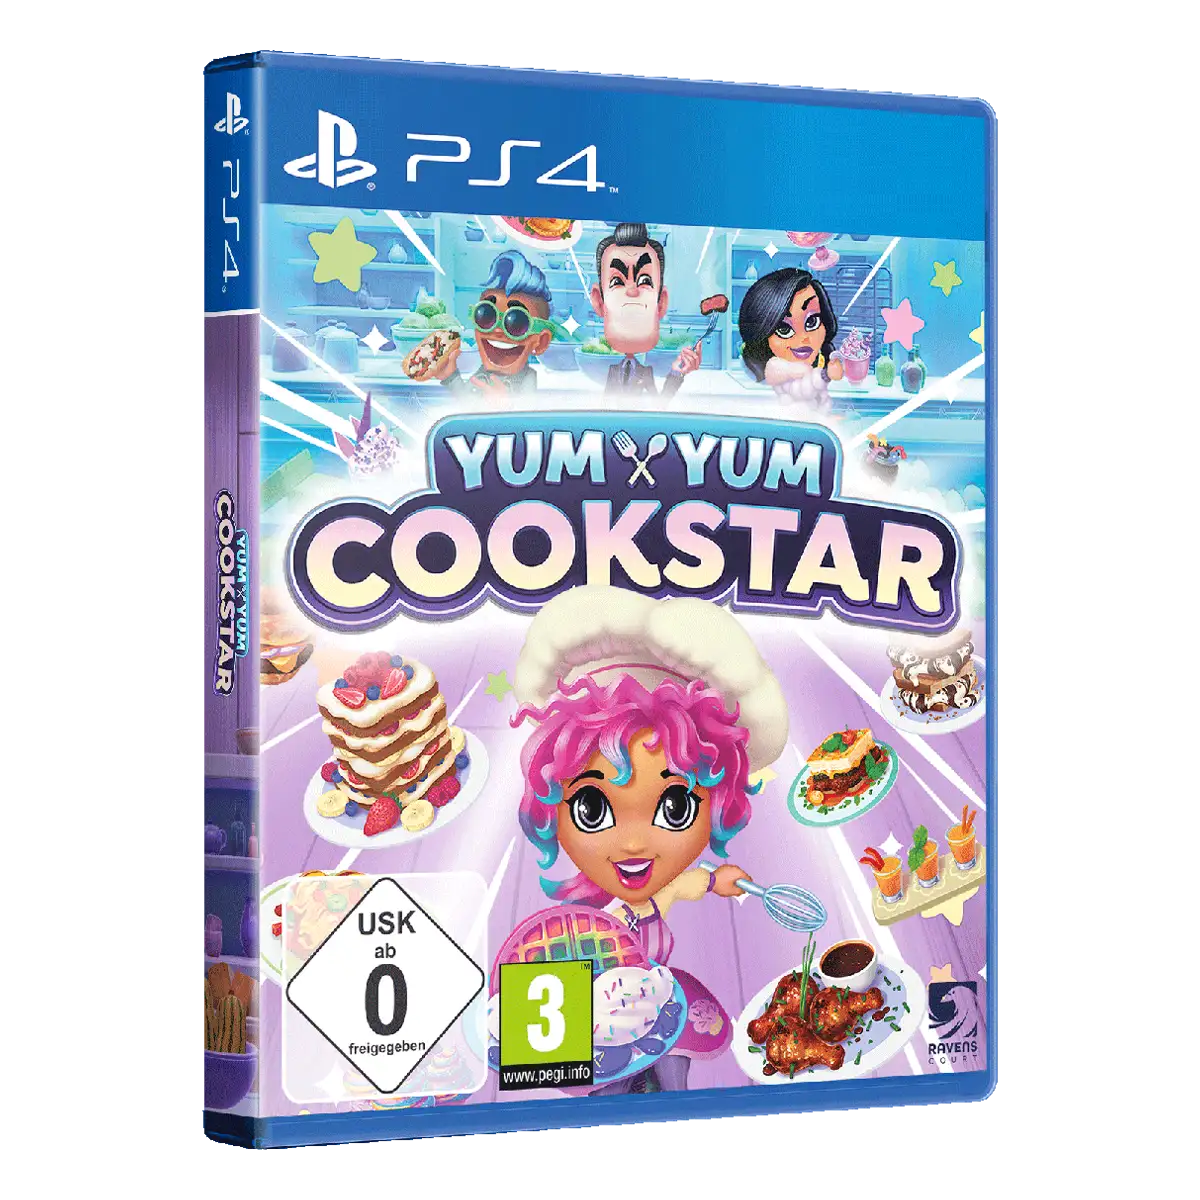 Yum Yum Cookstar (PS4) Image 2